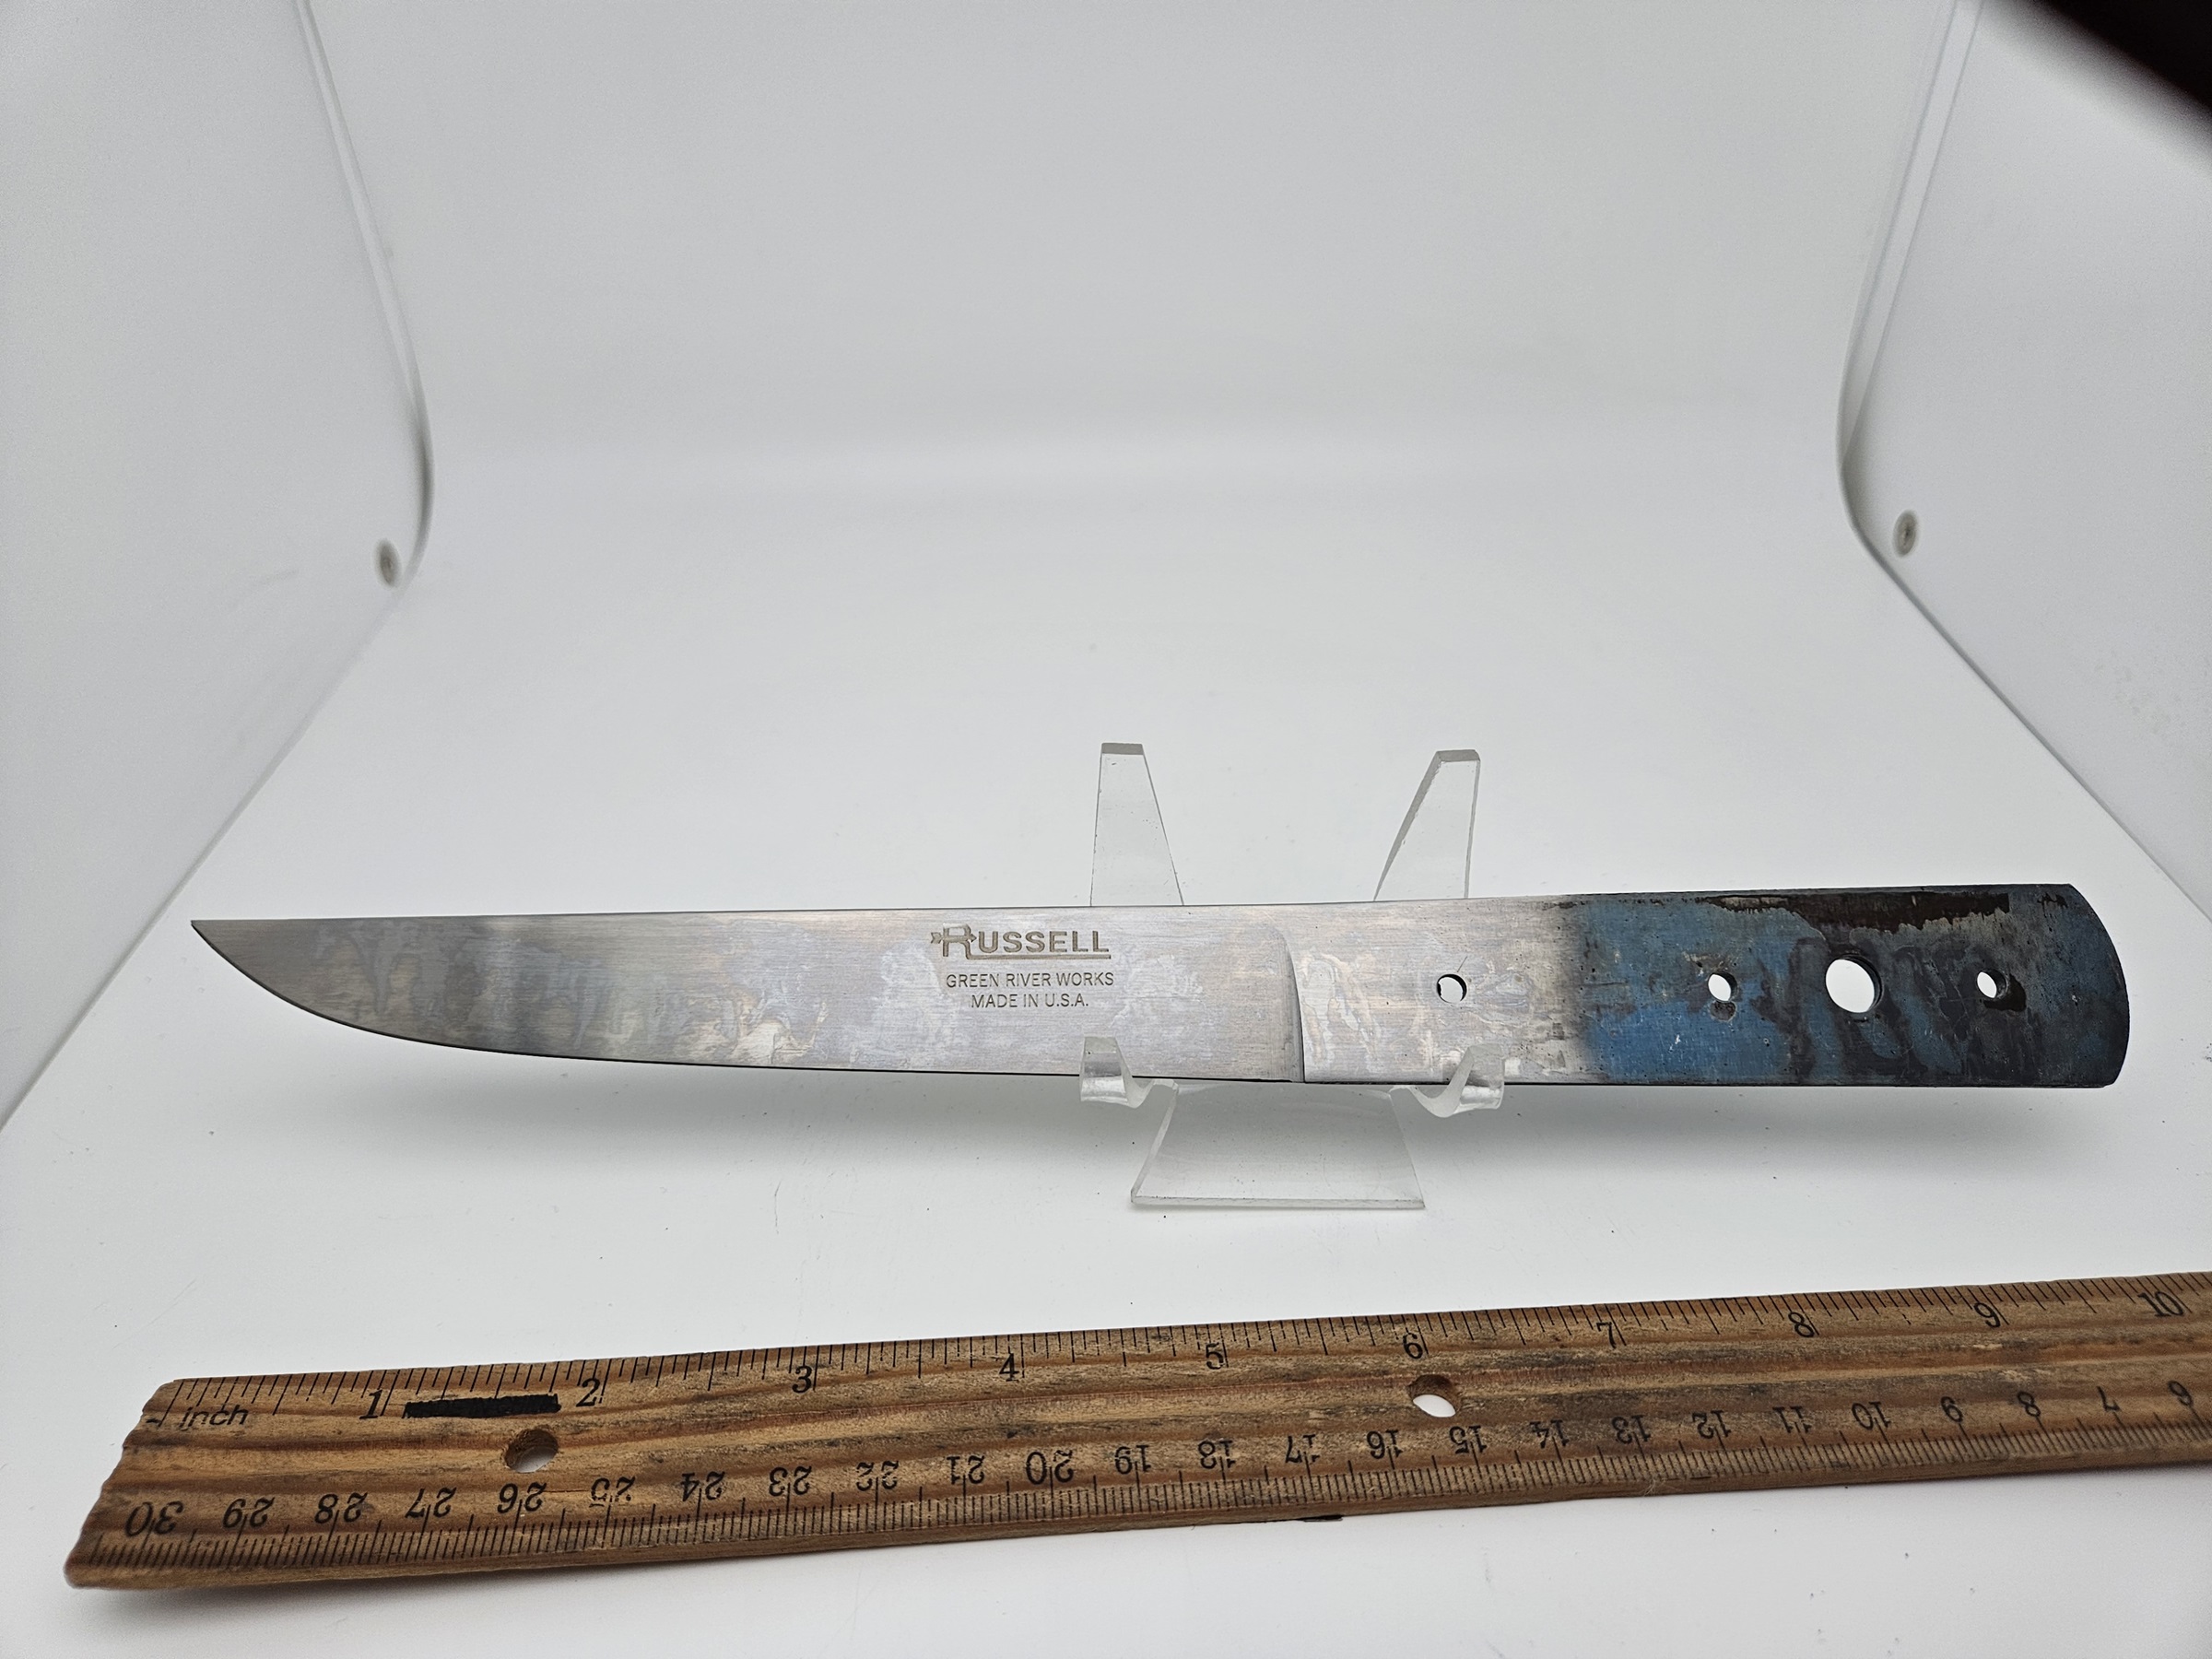 https://heimerdingercutlery.com/wp-content/uploads/2009/05/RH2317-Boning-Blade-Russell-Carbon-Blade-6-IN-for-Knife-Making.jpg